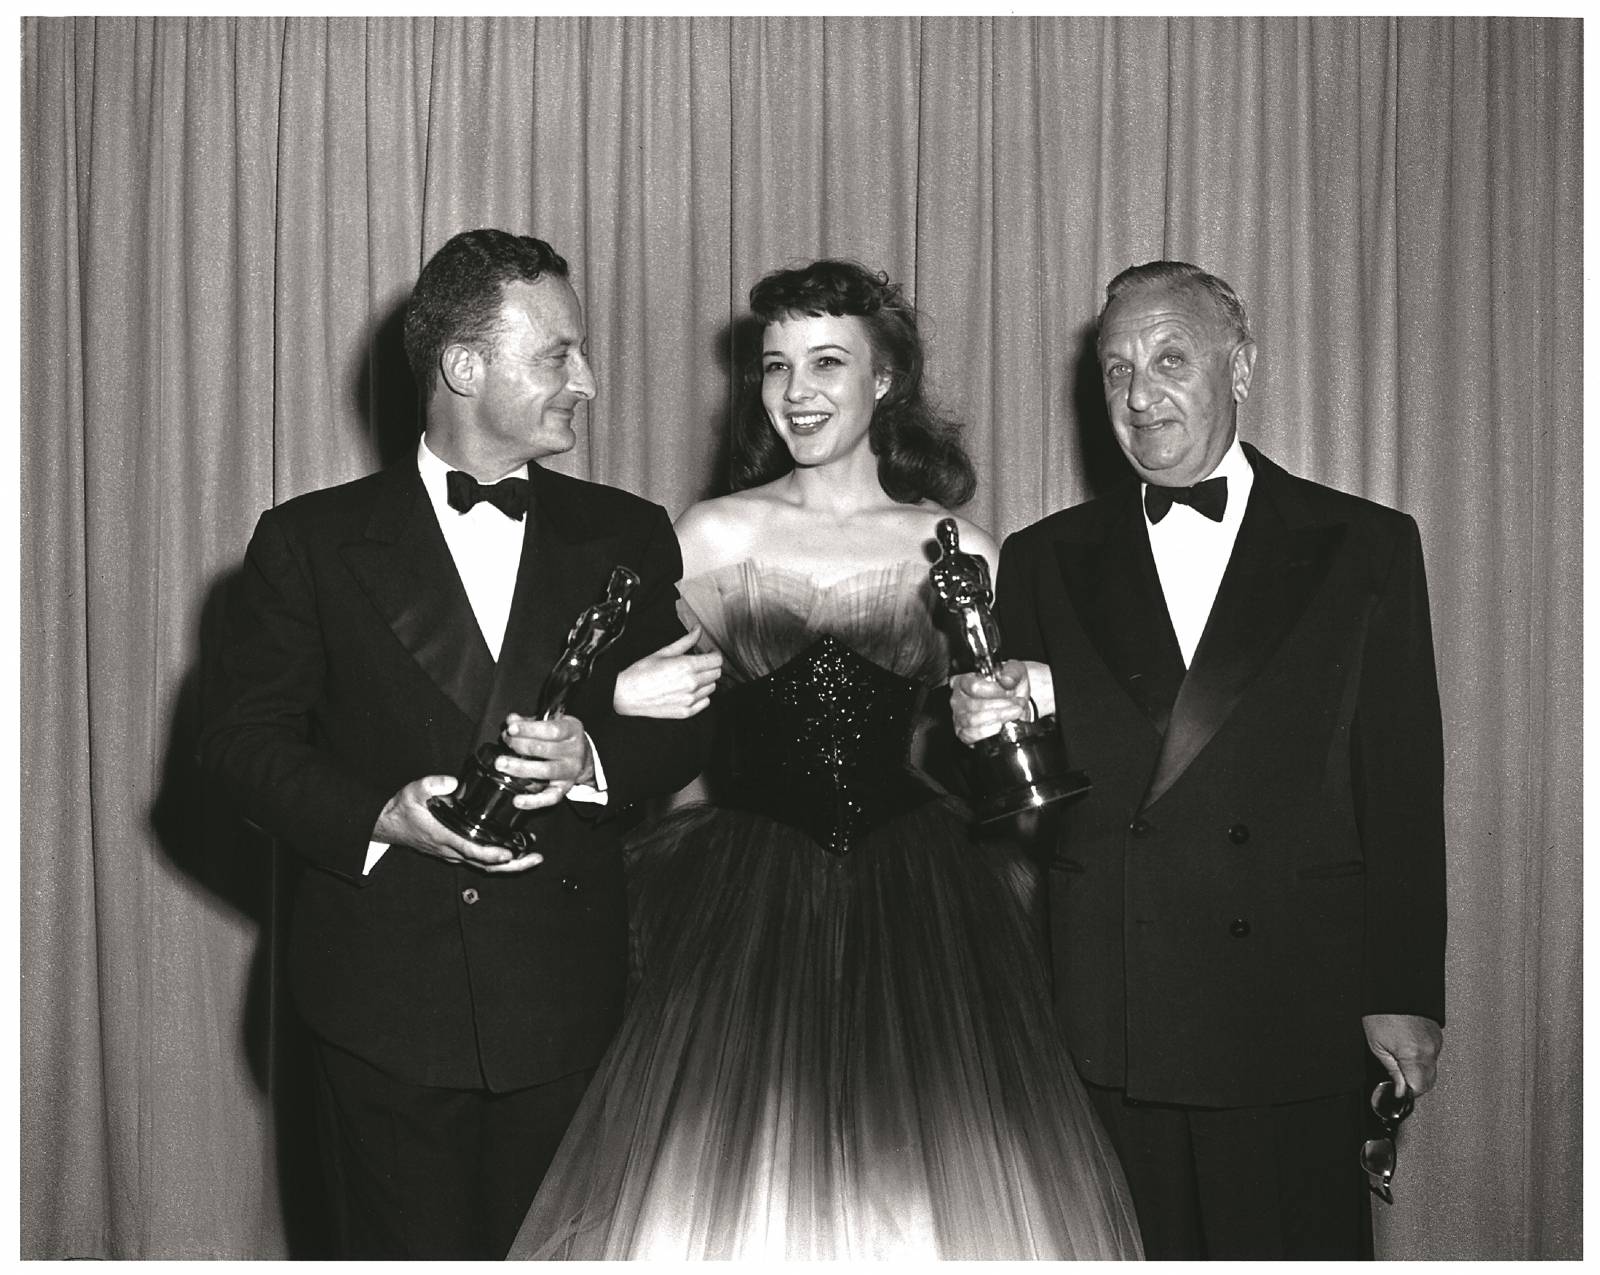 Fred Zinnemann, Janice Rule i Sol Lesser na gali wręczenia Oscarów, 1951 (Fot. abcdvdvideo.com, mat. prasowe)